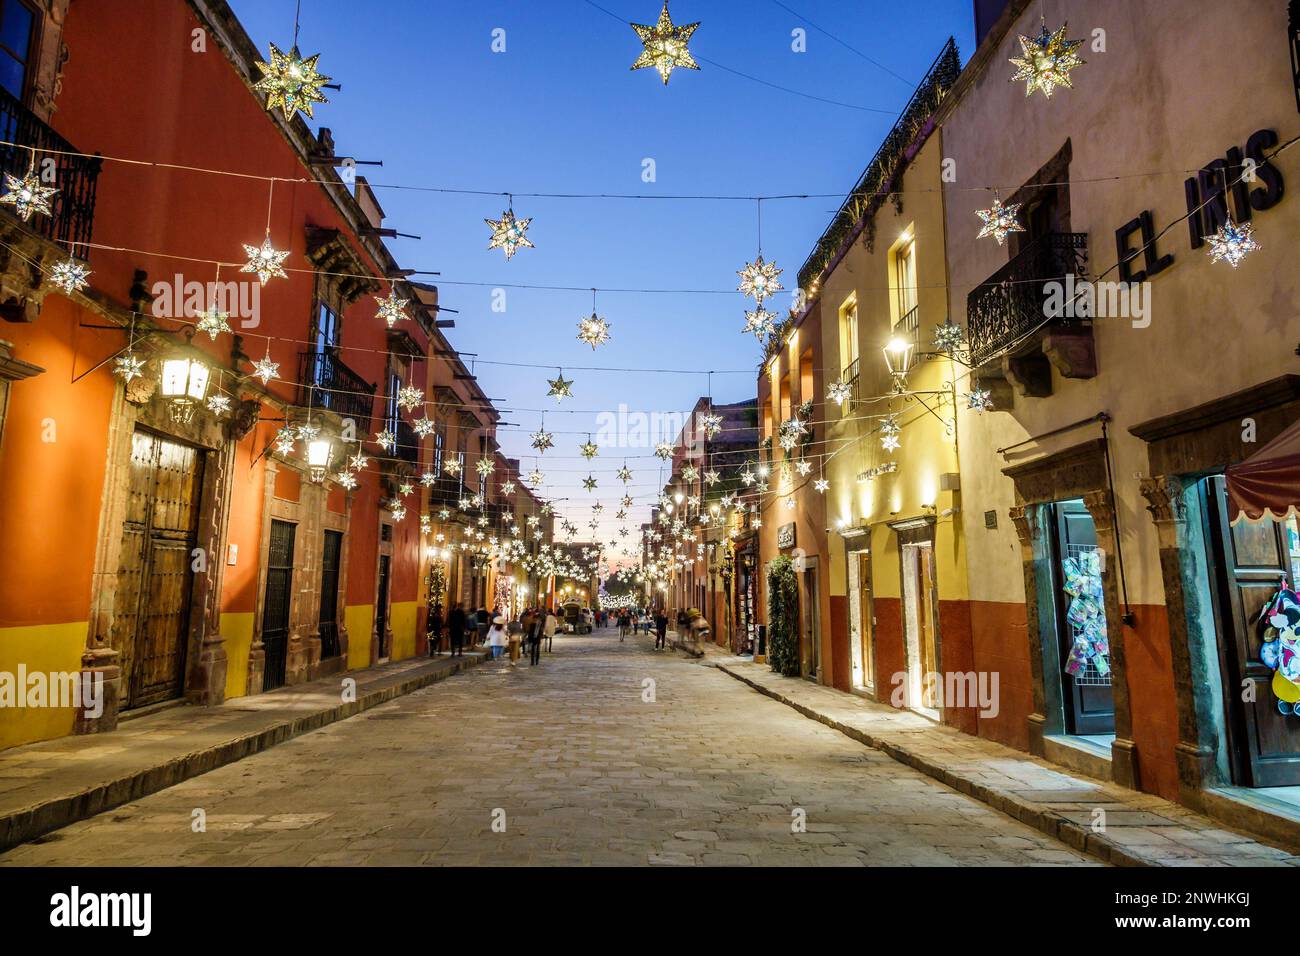 San Miguel de Allende Guanajuato Mexico, historisches Zentrum des historischen Stadtzentrums, Weihnachtsdekorationen mit hängenden Sternen, Abenddämmerung, Gebäude, Cit Stockfoto